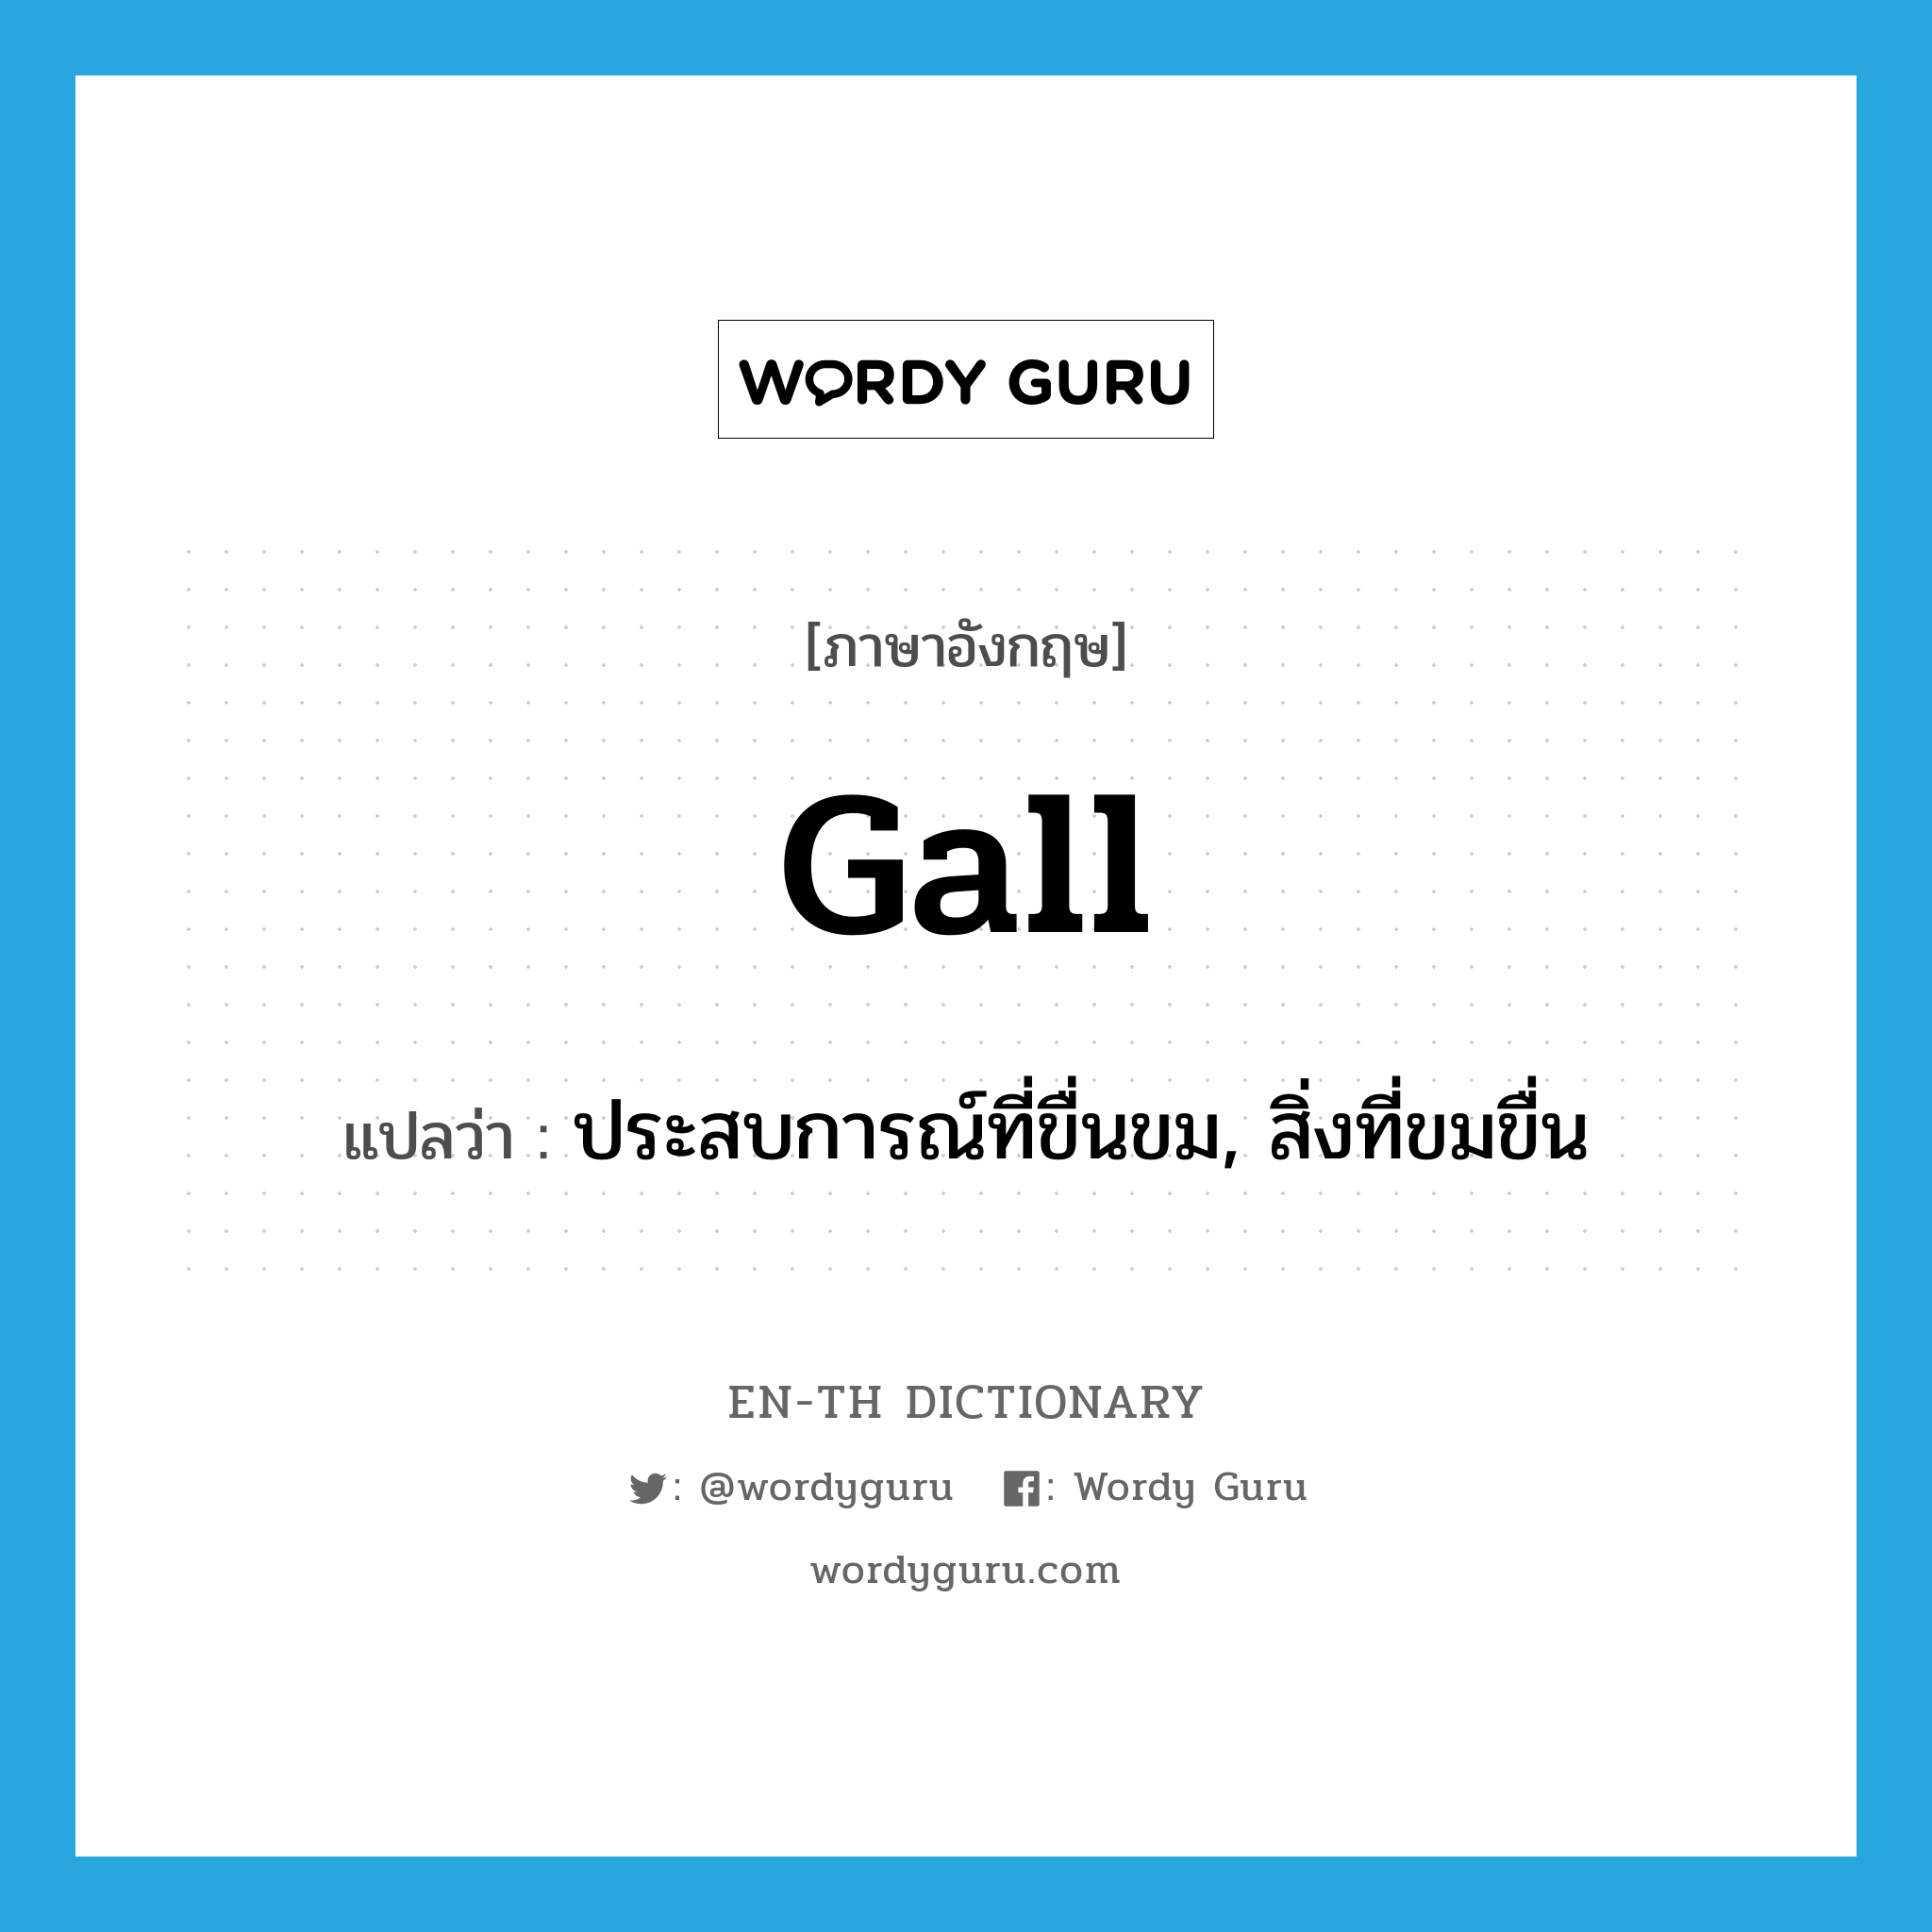 gall แปลว่า?, คำศัพท์ภาษาอังกฤษ gall แปลว่า ประสบการณ์ที่ขื่นขม, สิ่งที่ขมขื่น ประเภท N หมวด N